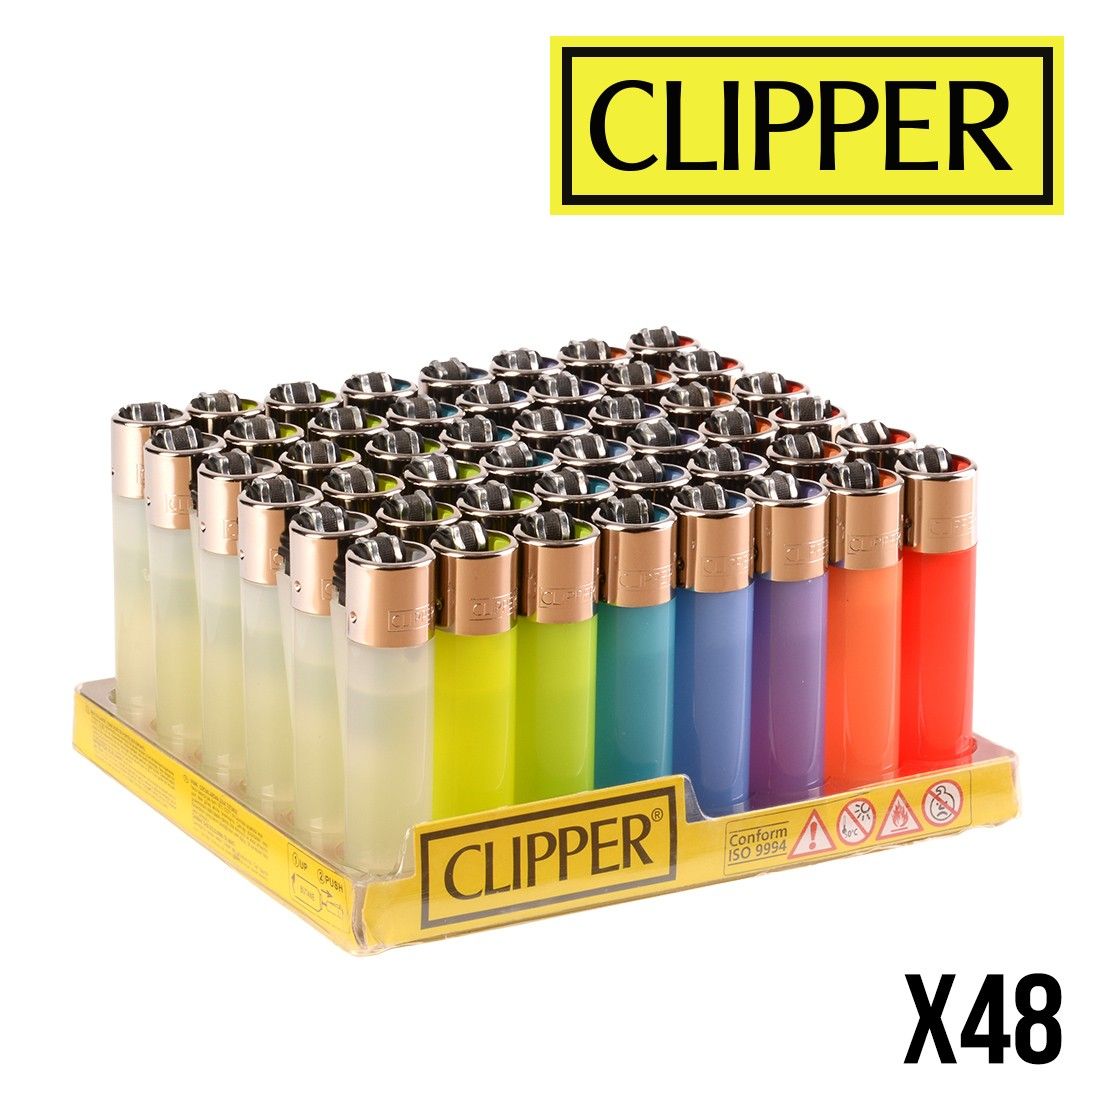 Briquet Clipper Micro Couleur x 48 - 34,00€